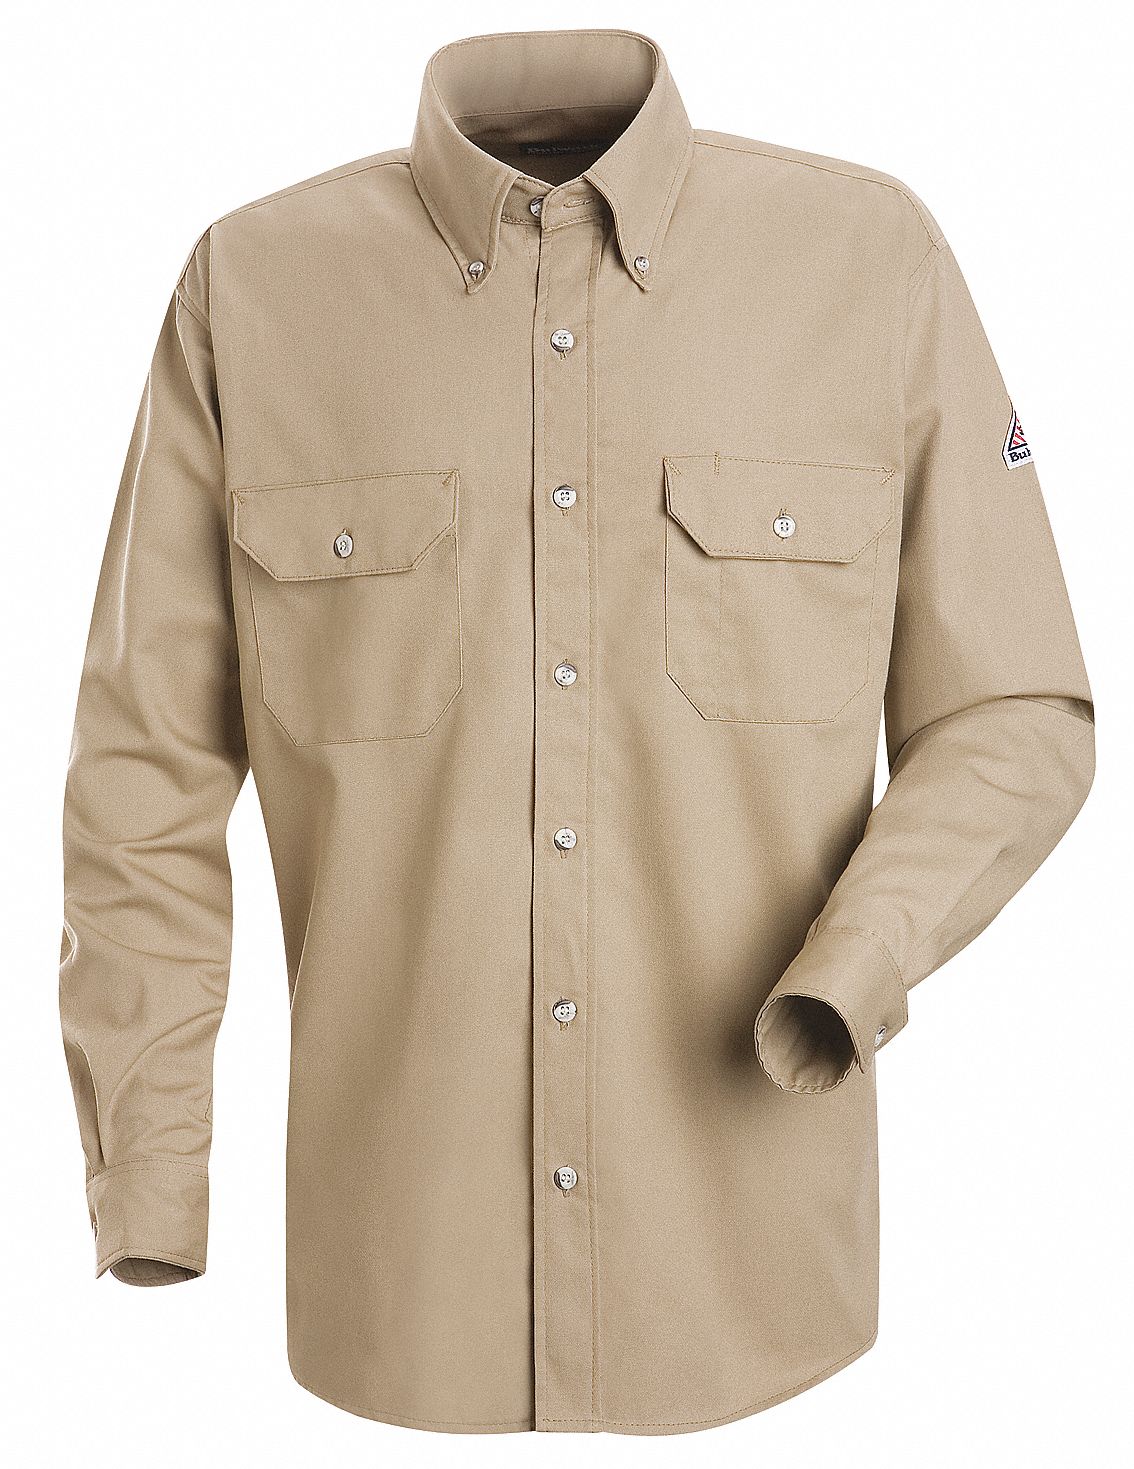 VF IMAGEWEAR Flame-Resistant Collared Shirt: 9 cal/sq cm ATPV, Men's ...